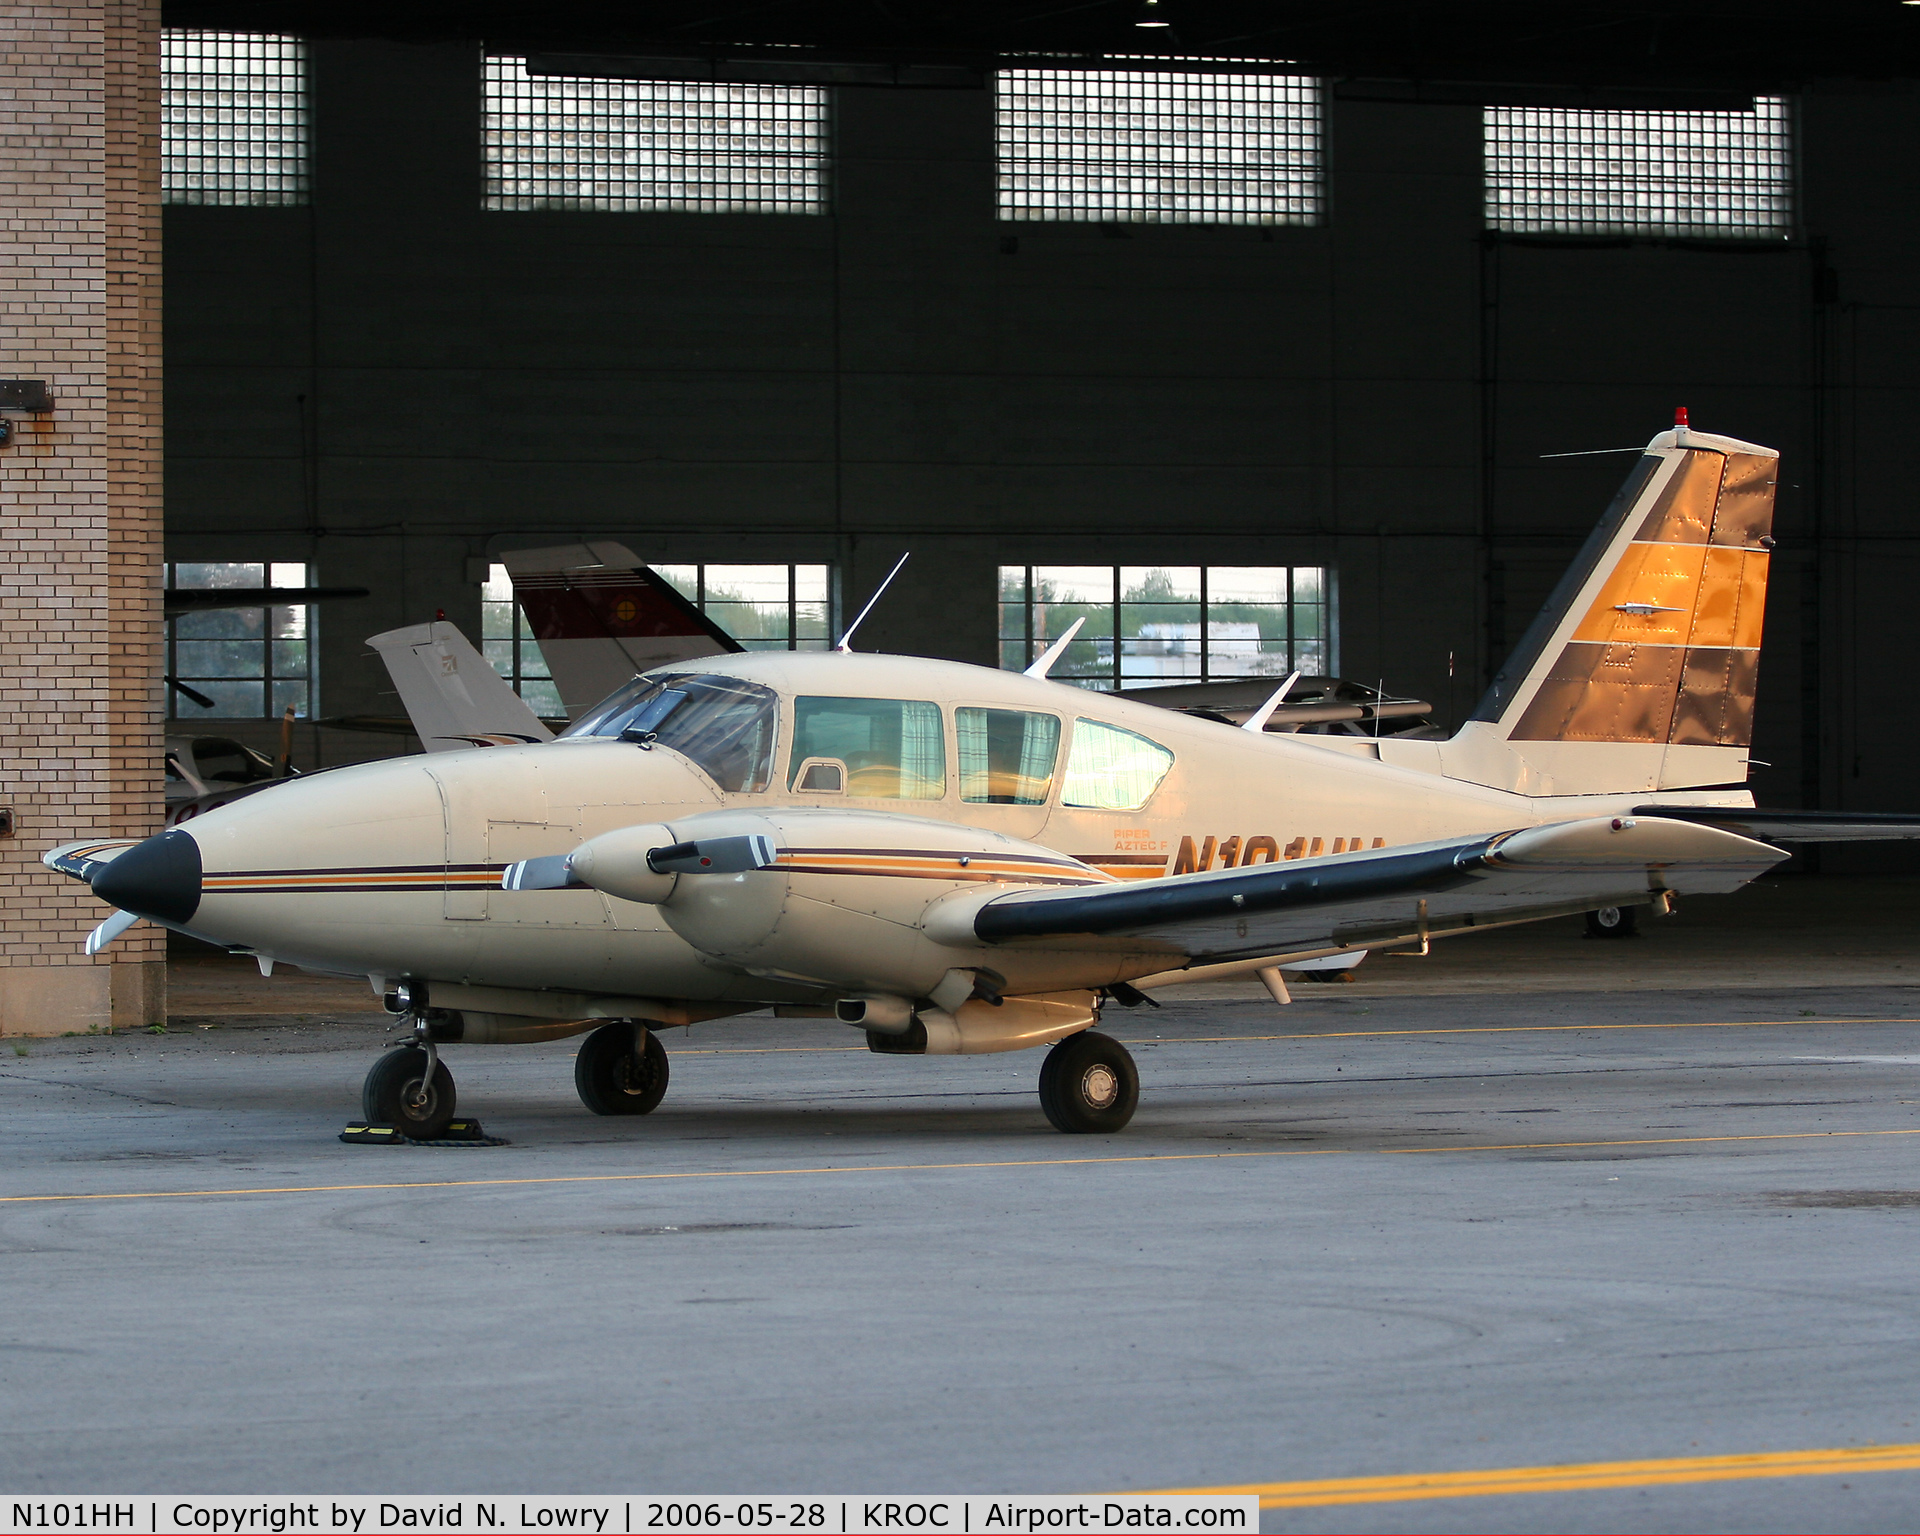 N101HH, 1980 Piper PA-23-250 C/N 27-8054057, N101HH at KROC.